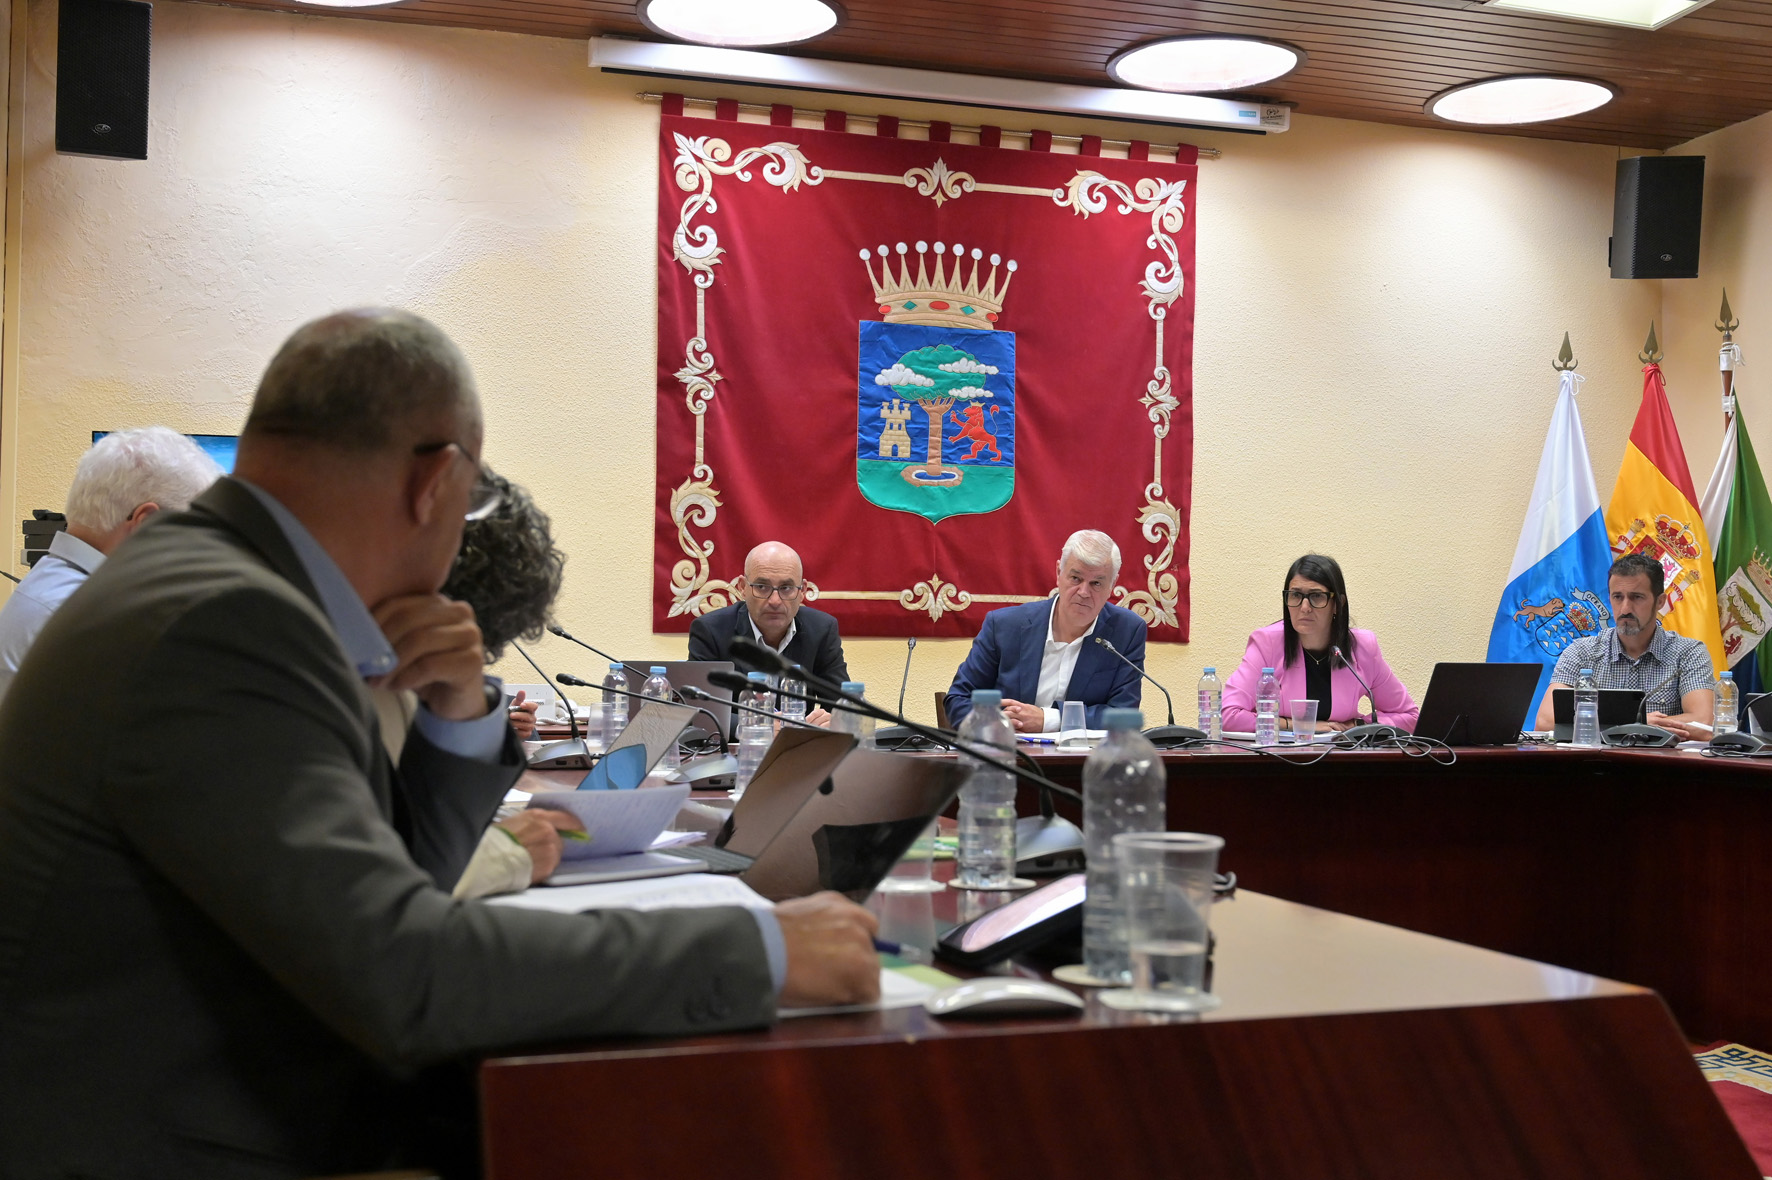 AHI pregunta al presidente del Cabildo, si cumplirá con su promesa de pagar con recursos de la institución la diferencia de precio del combustible con Tenerife